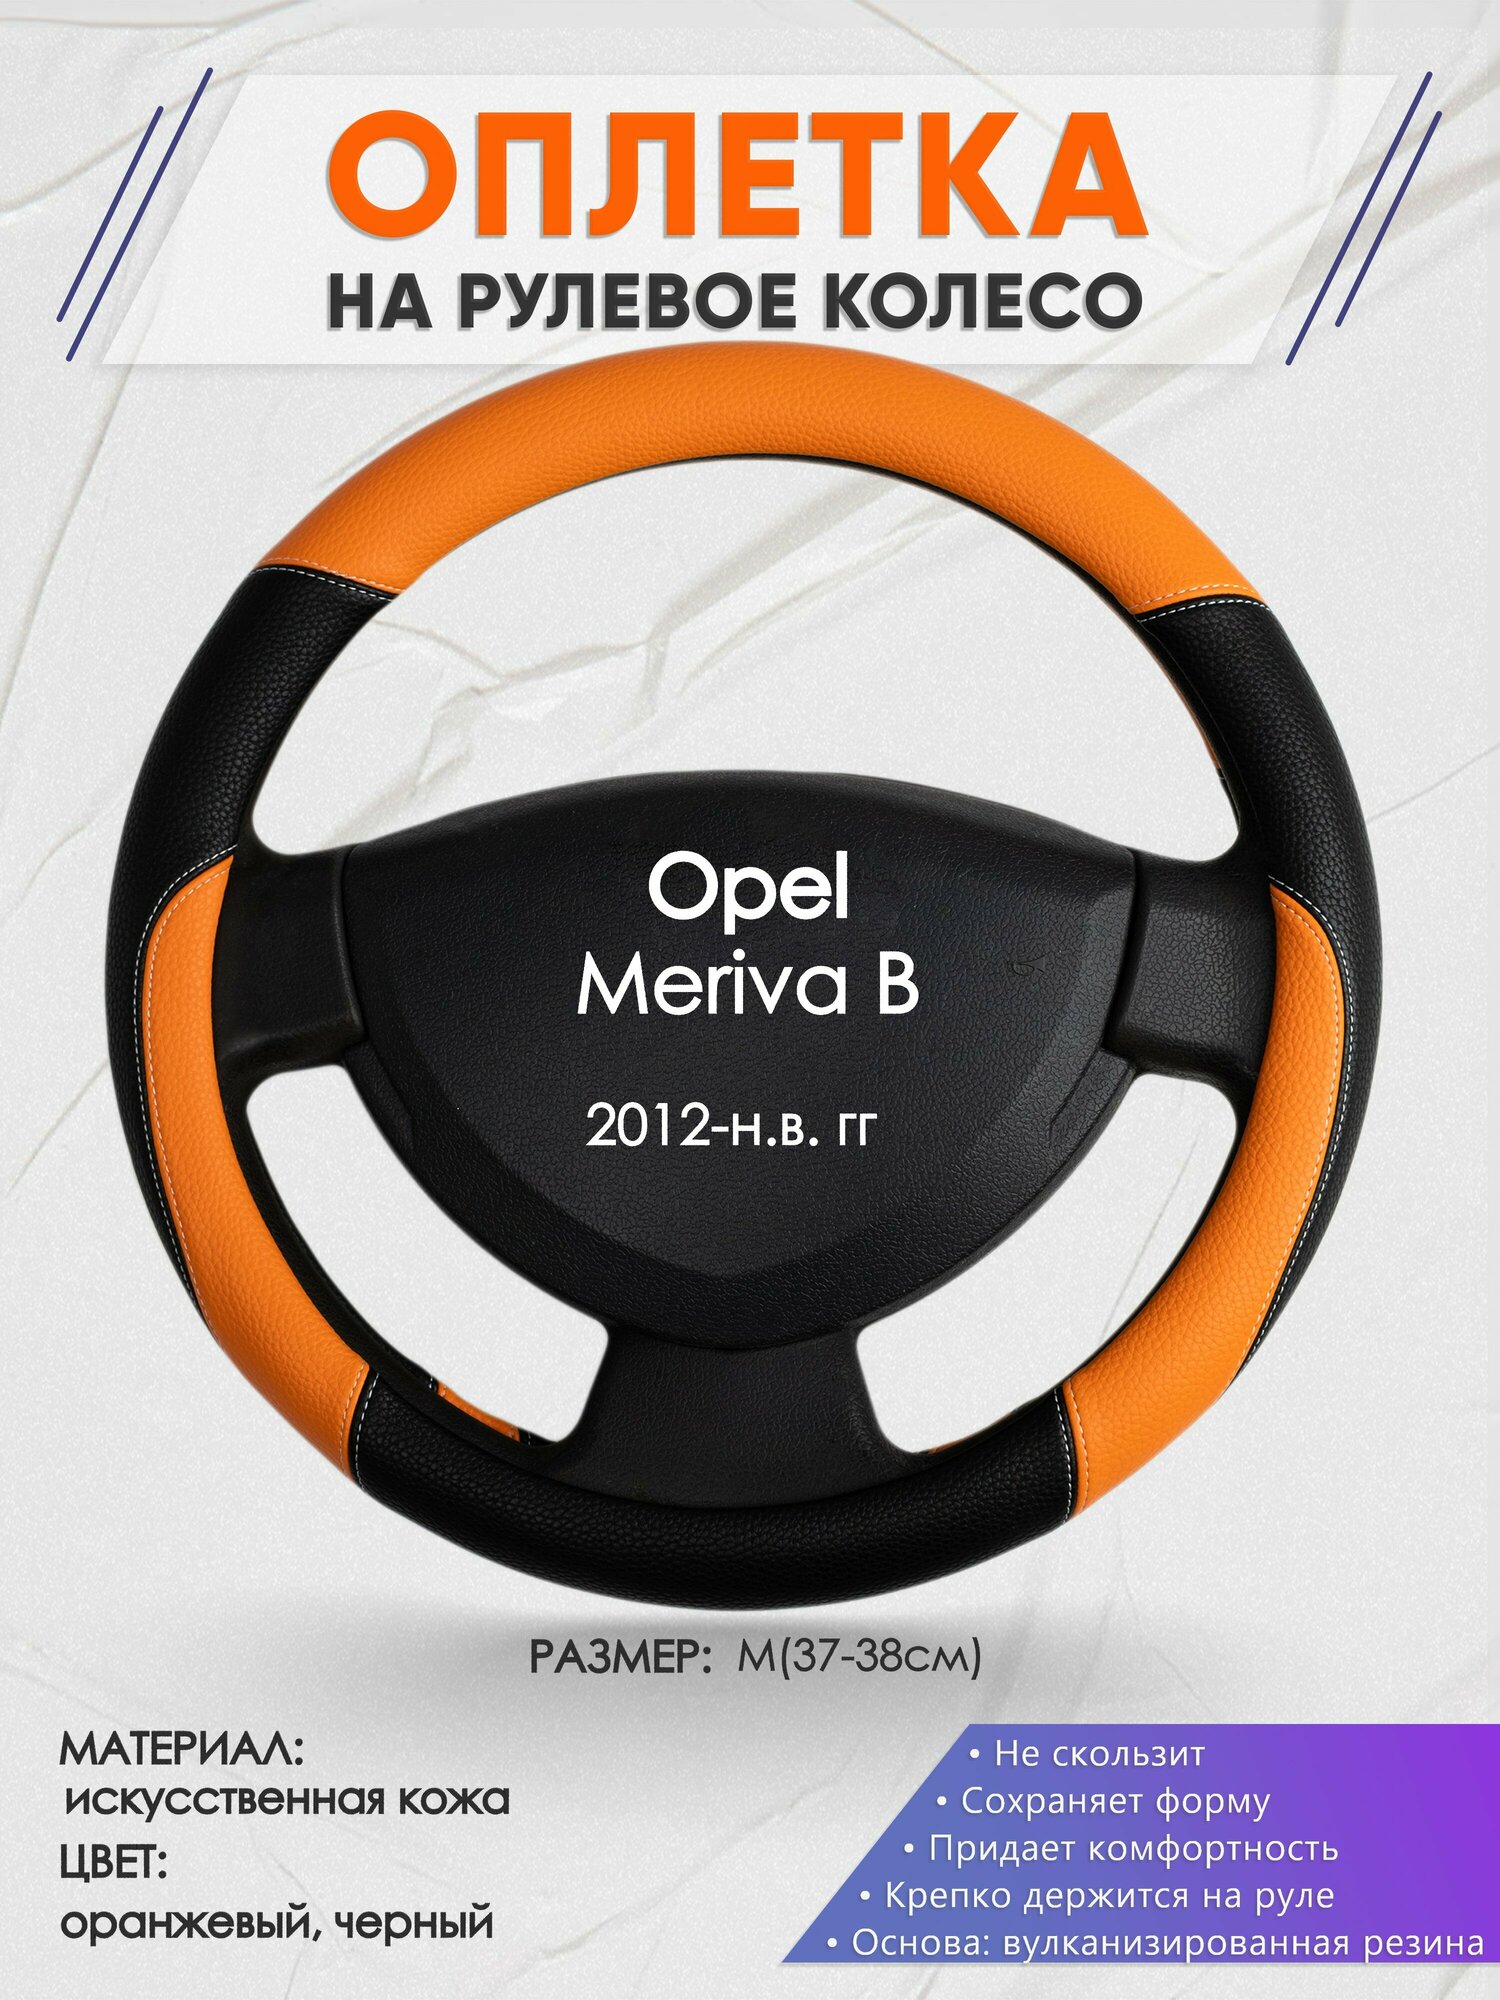 Оплетка на руль для Opel Meriva В(Опель Мерива Б) 2012-н. в, M(37-38см), Искусственная кожа 66